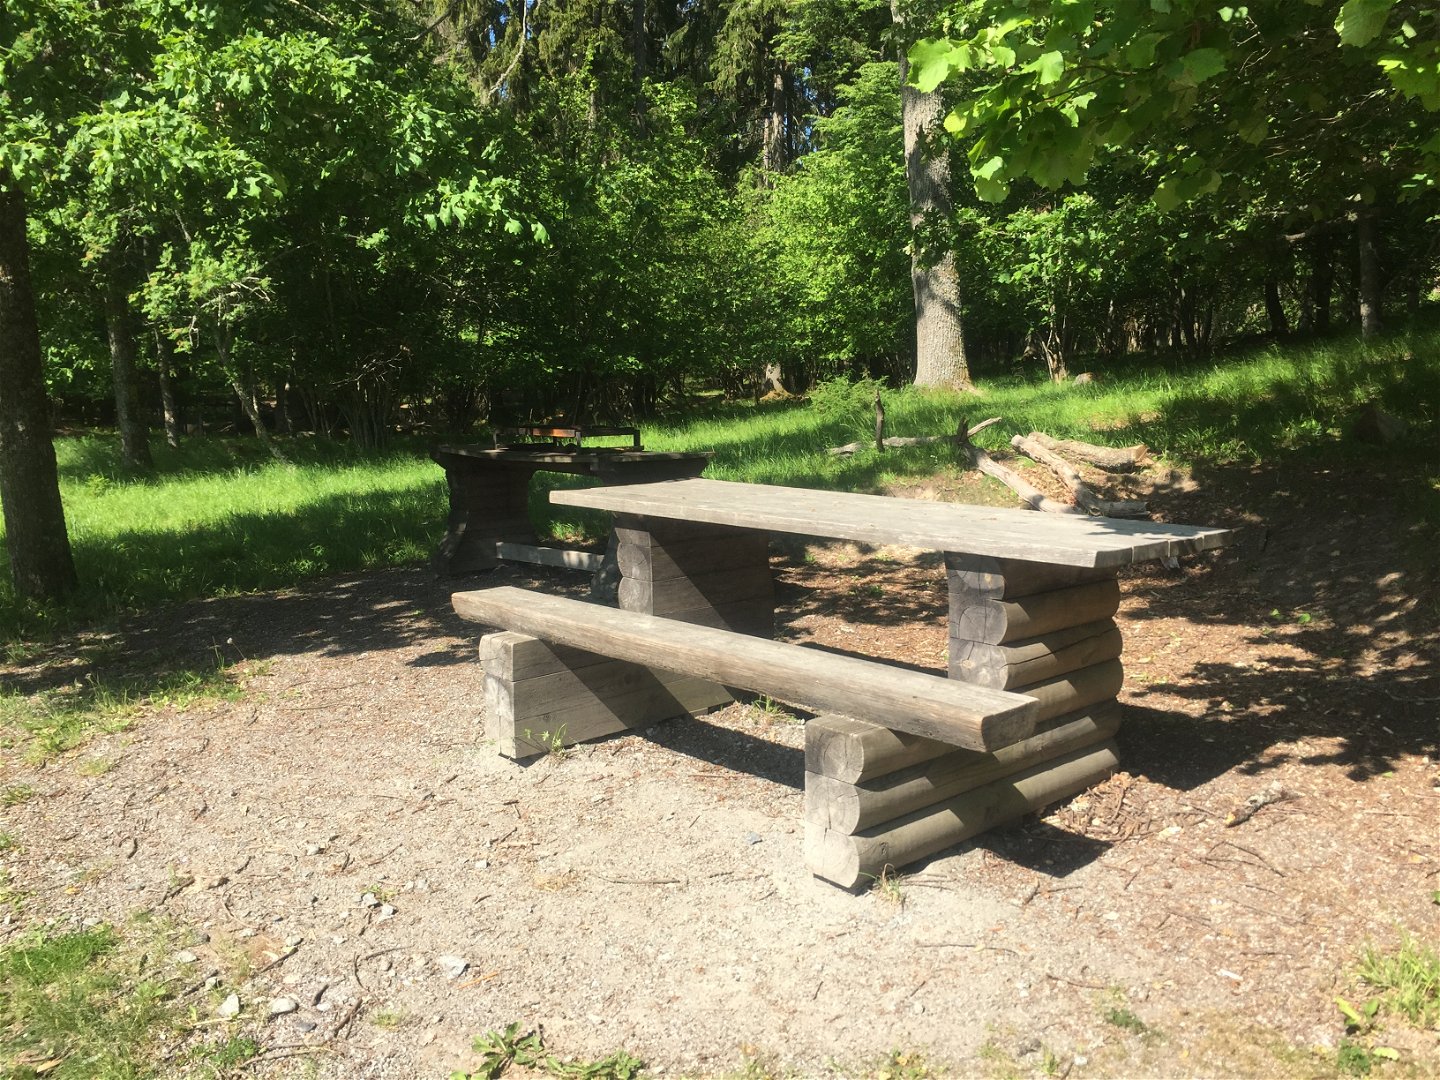 Ett bord med bänk på ena sidan står på en grusyta i skogen. Bredvid står ett grillbord.